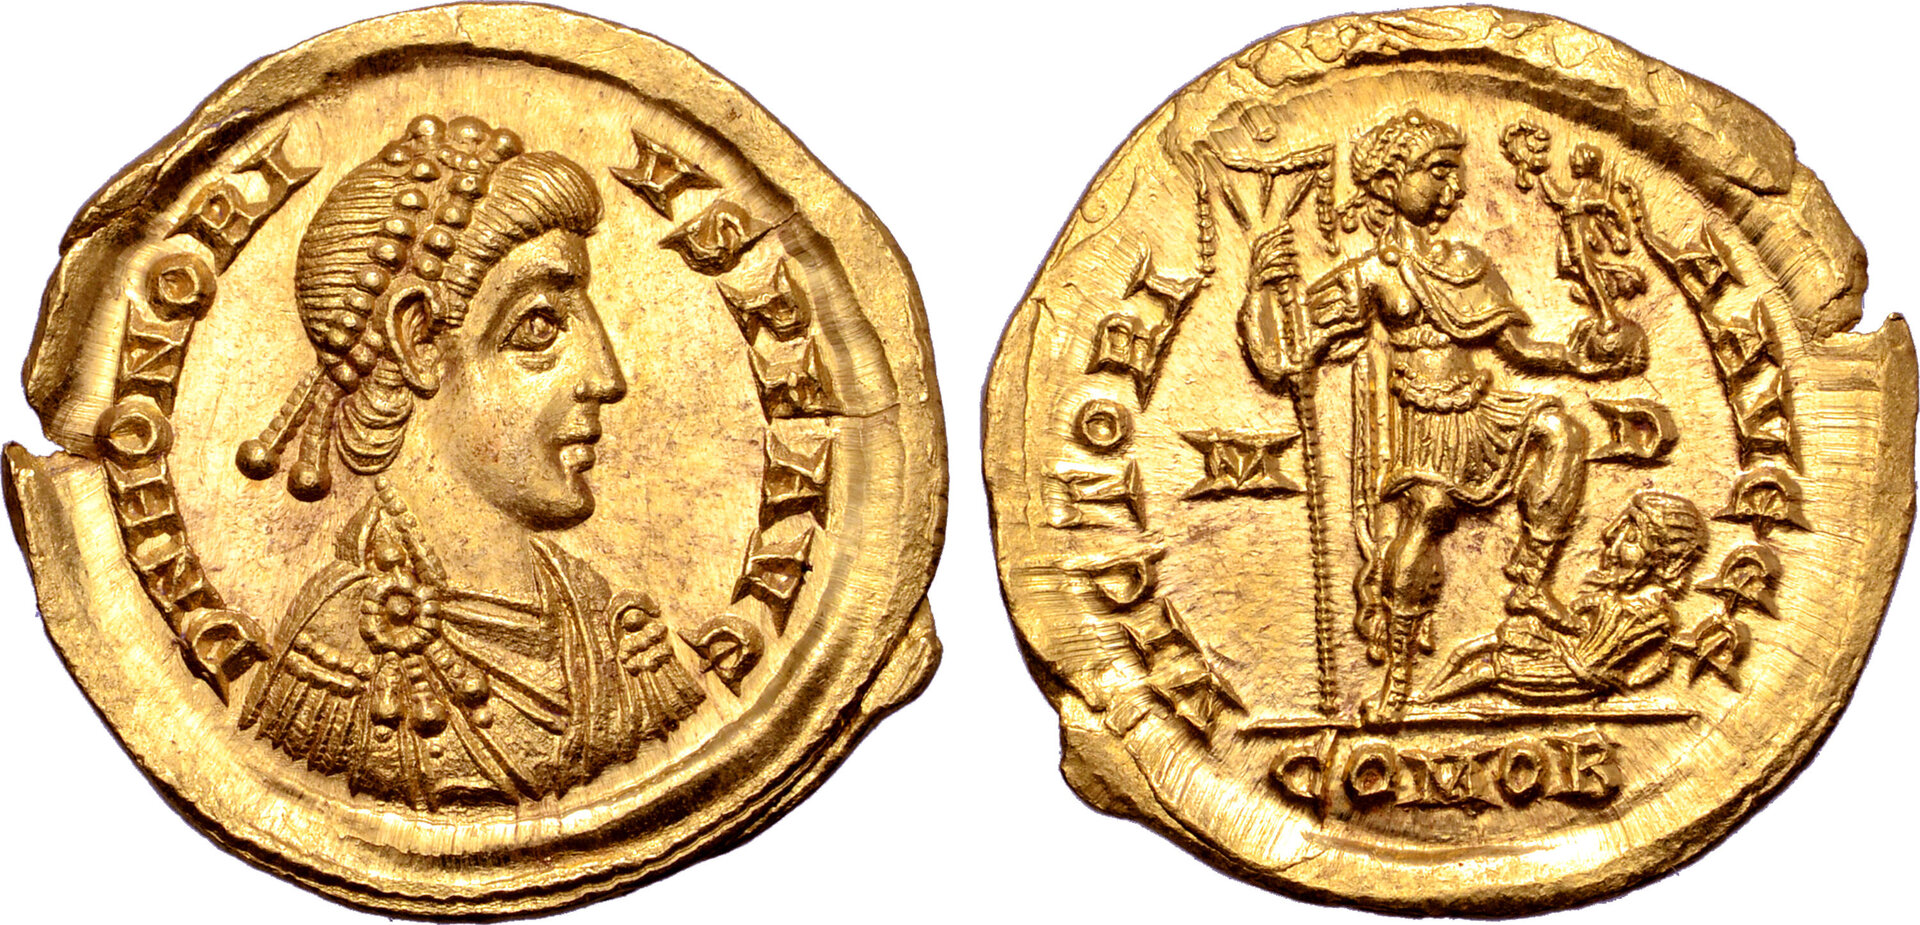 Honorius solidus mediolanum.jpg